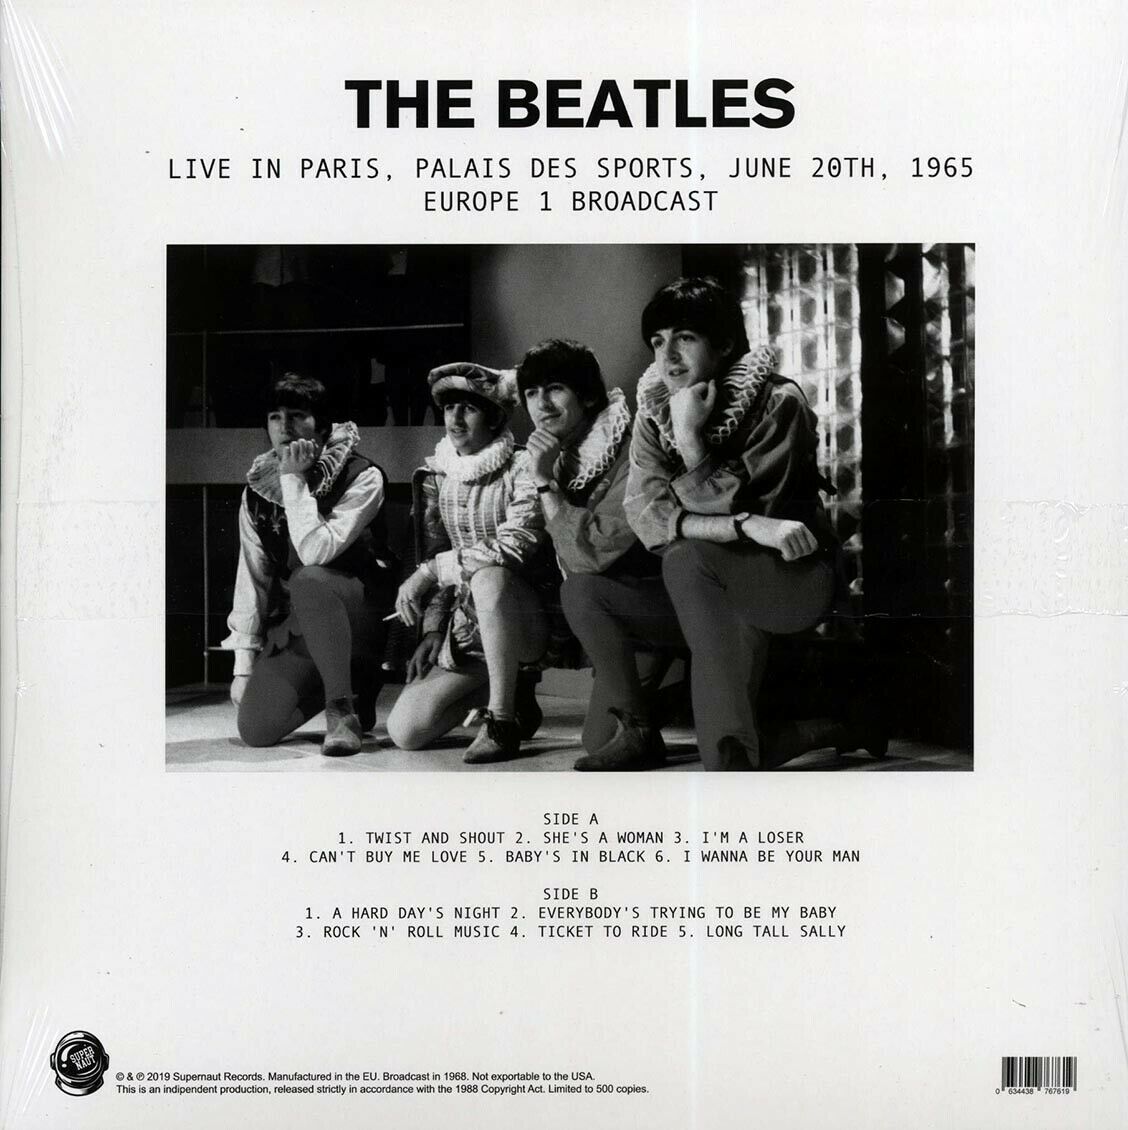 The Beatles (비틀즈) - Live In Paris, Palais De Sports, June 20th, 1965 Europe 1 Broadcast [LP] 